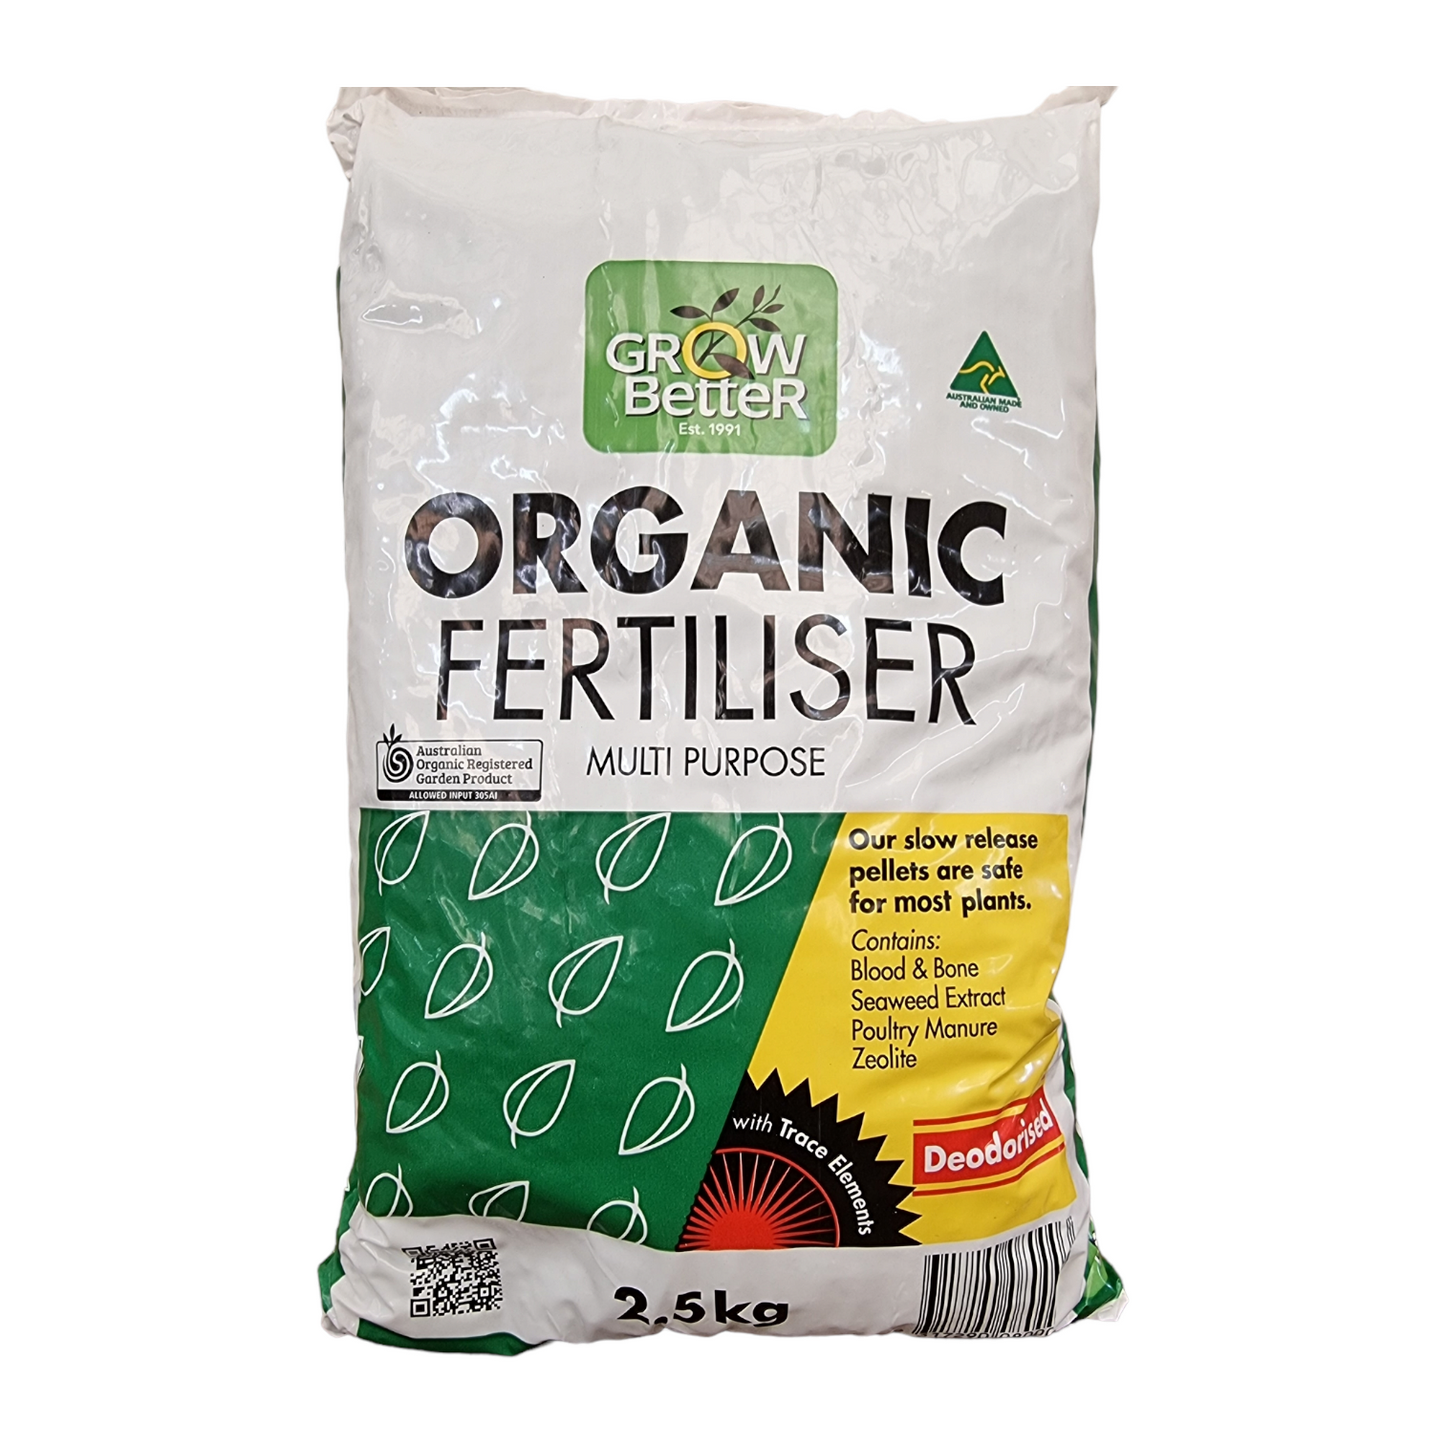 Organic Fertiliser 2.5kg